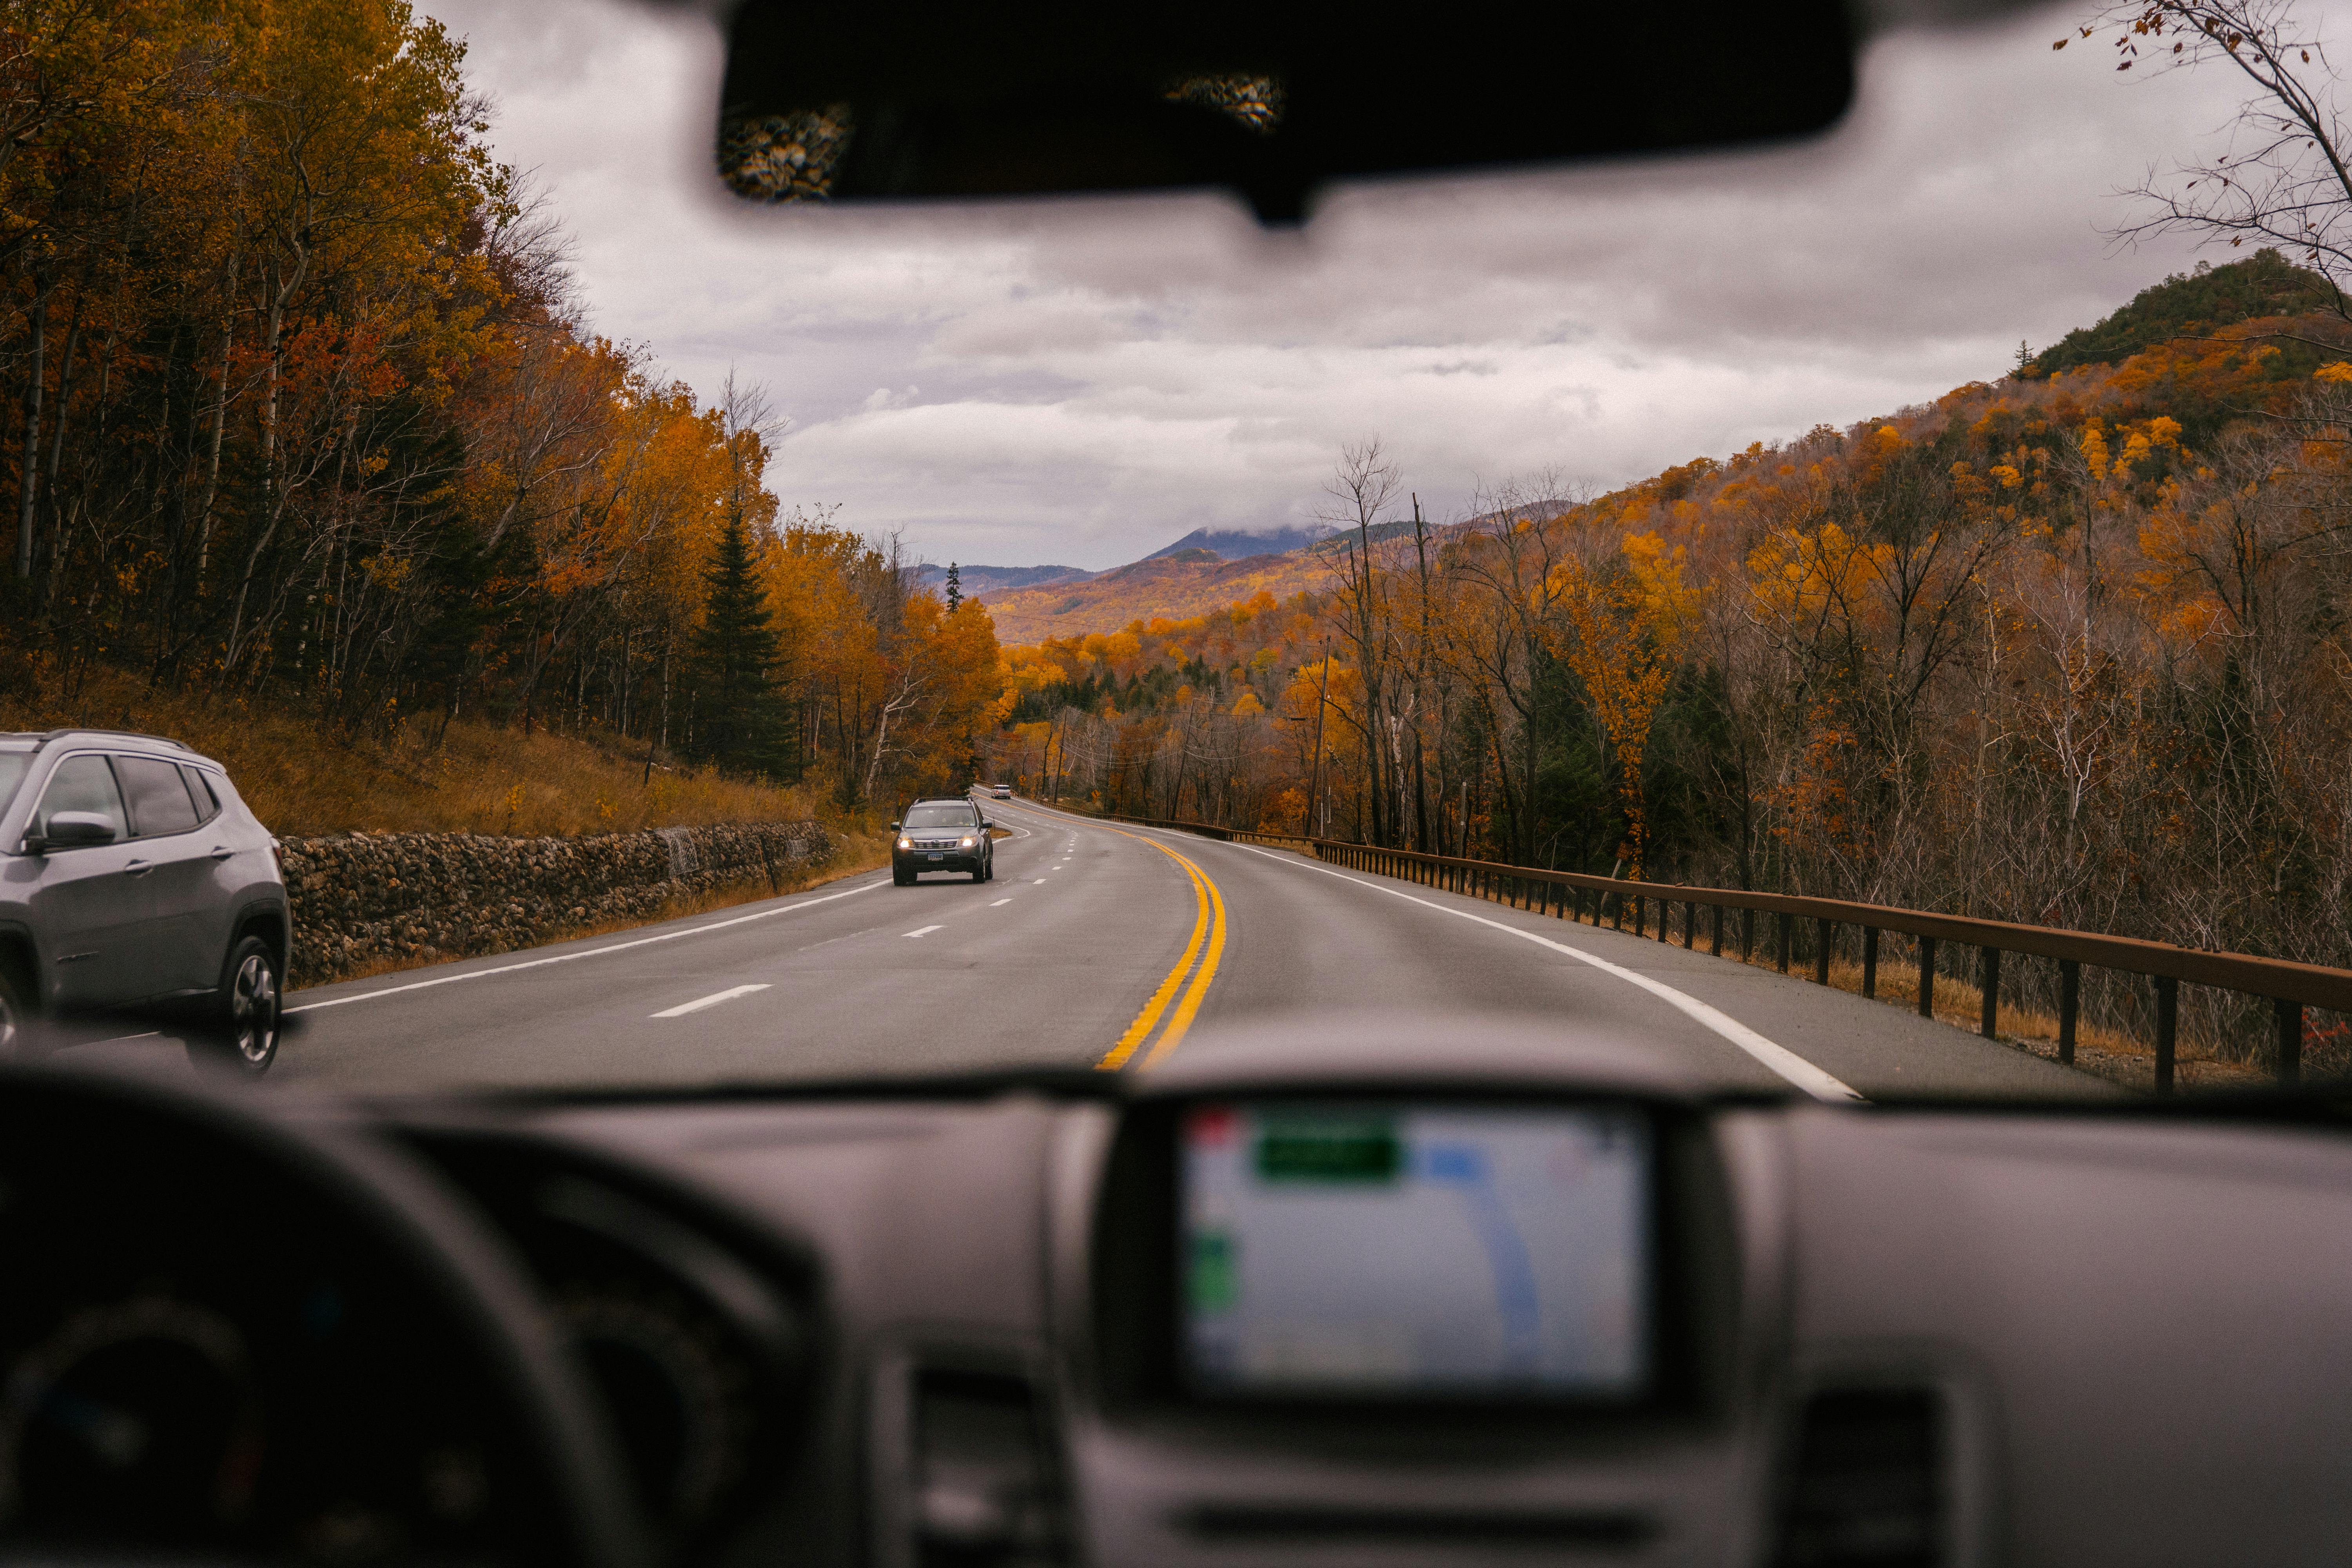 Vista de la carretera desde un automóvil. Imagen con fines ilustrativos | Foto: Pexels